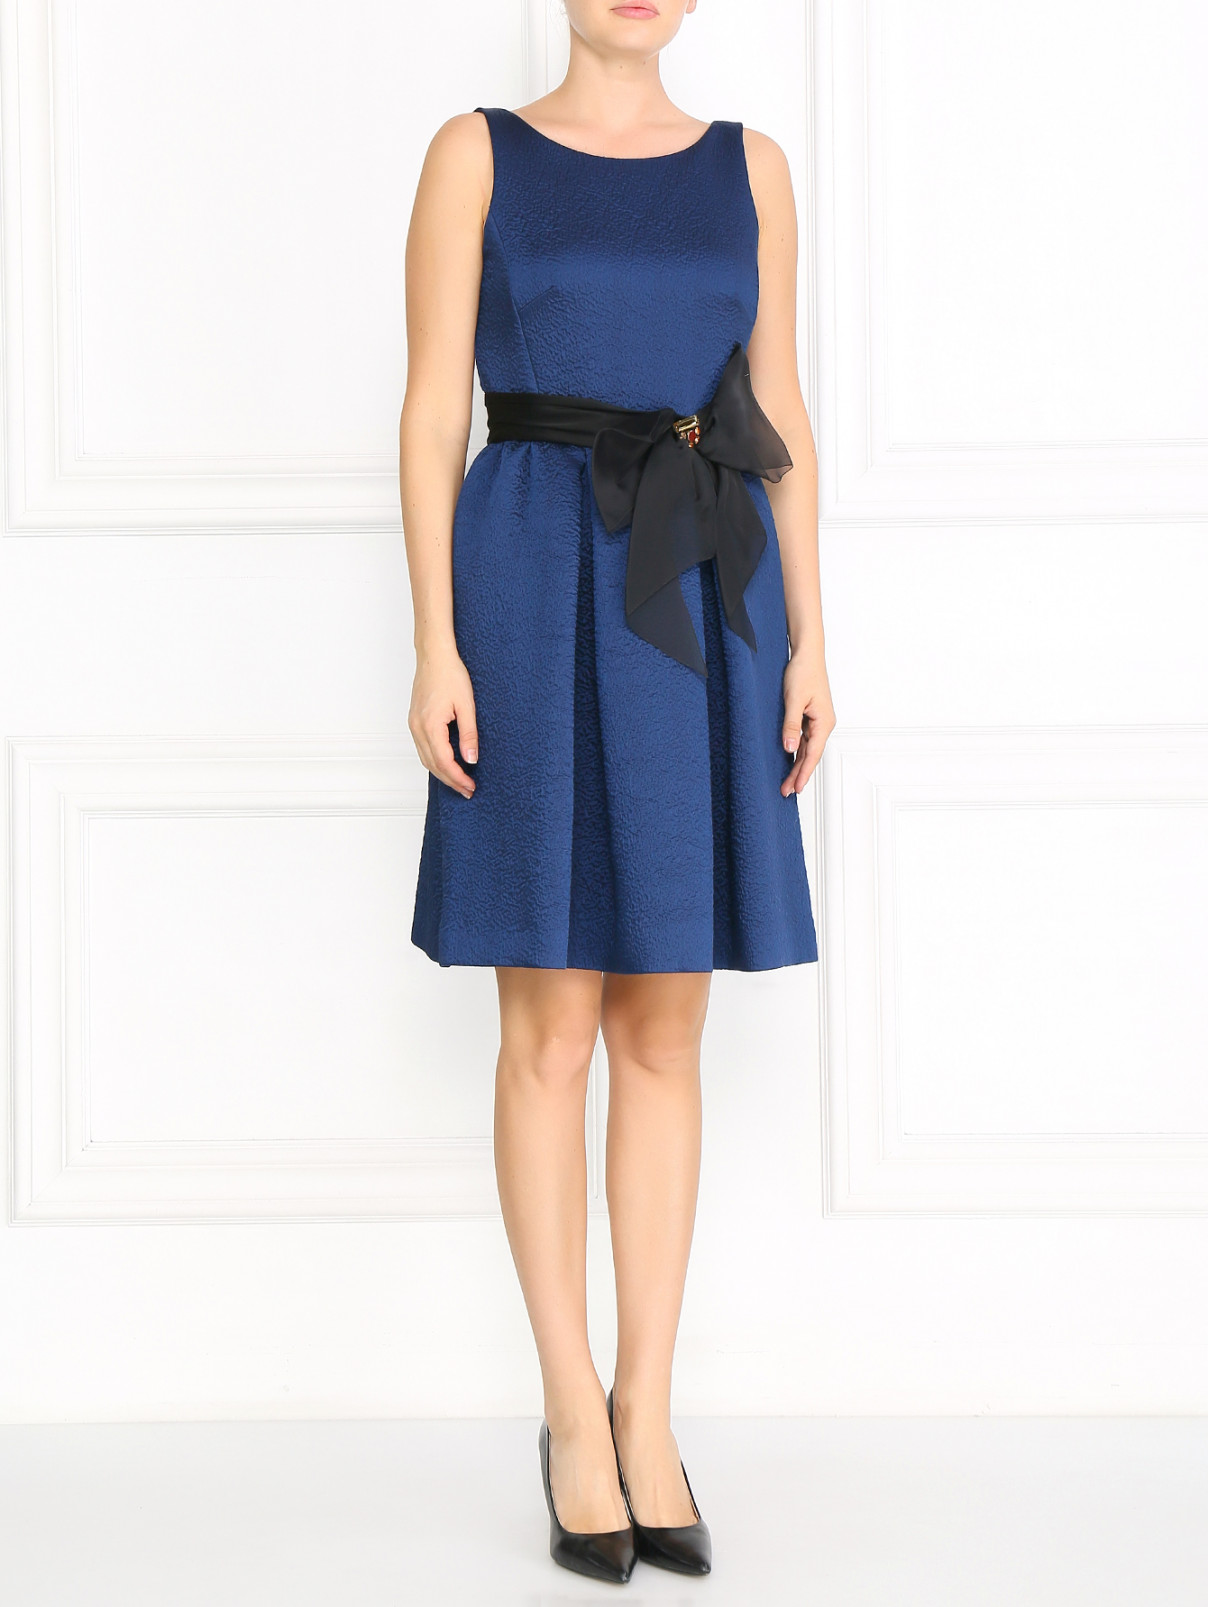 Платье с пышной юбкой и декоративным поясом на талии Paule Ka  –  Модель Общий вид  – Цвет:  Синий